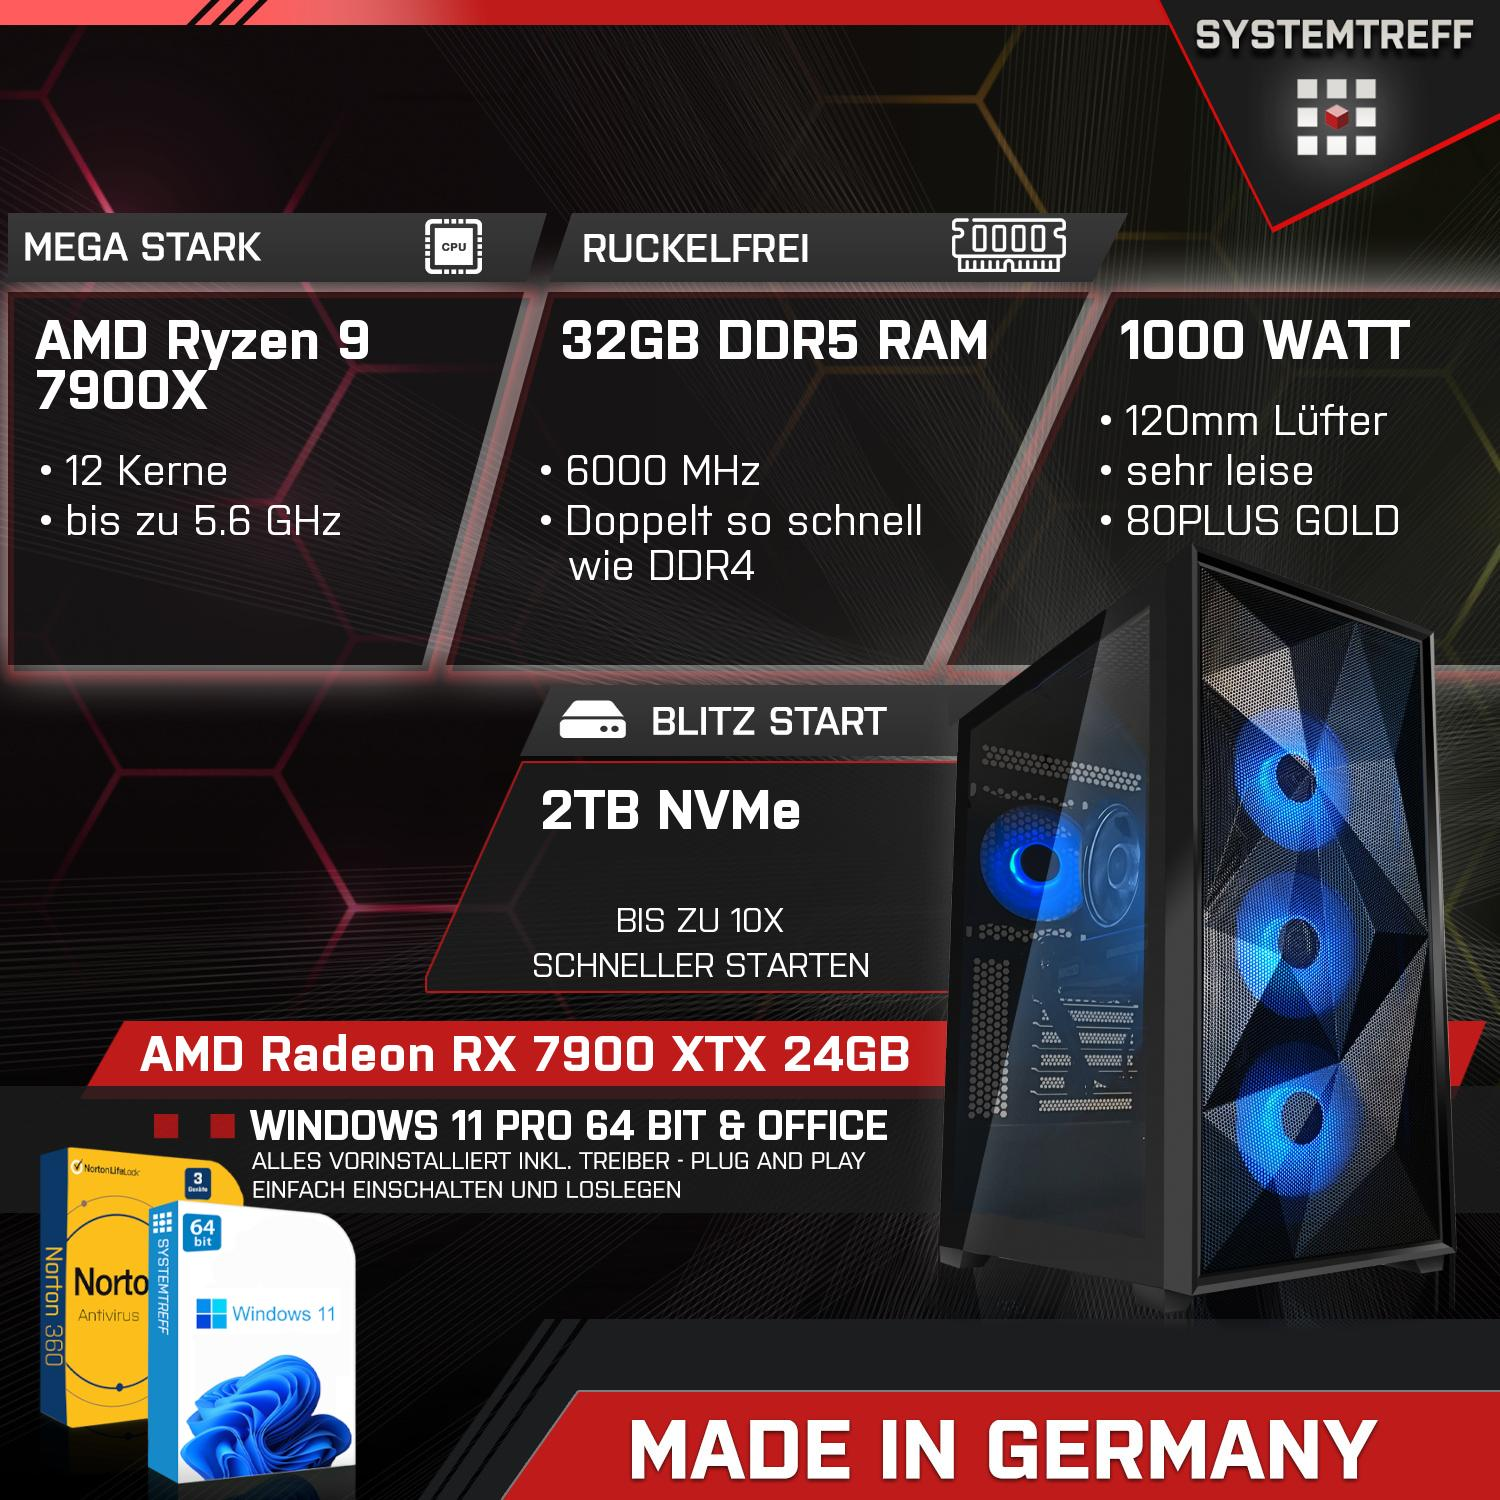 SYSTEMTREFF Gaming Komplett Prozessor, RAM, 24GB PC XTX GB Komplett 7900X 7900 GB 32 RX Radeon GDDR6, Ryzen 2000 24 GB mSSD, AMD mit 9 AMD 7900X